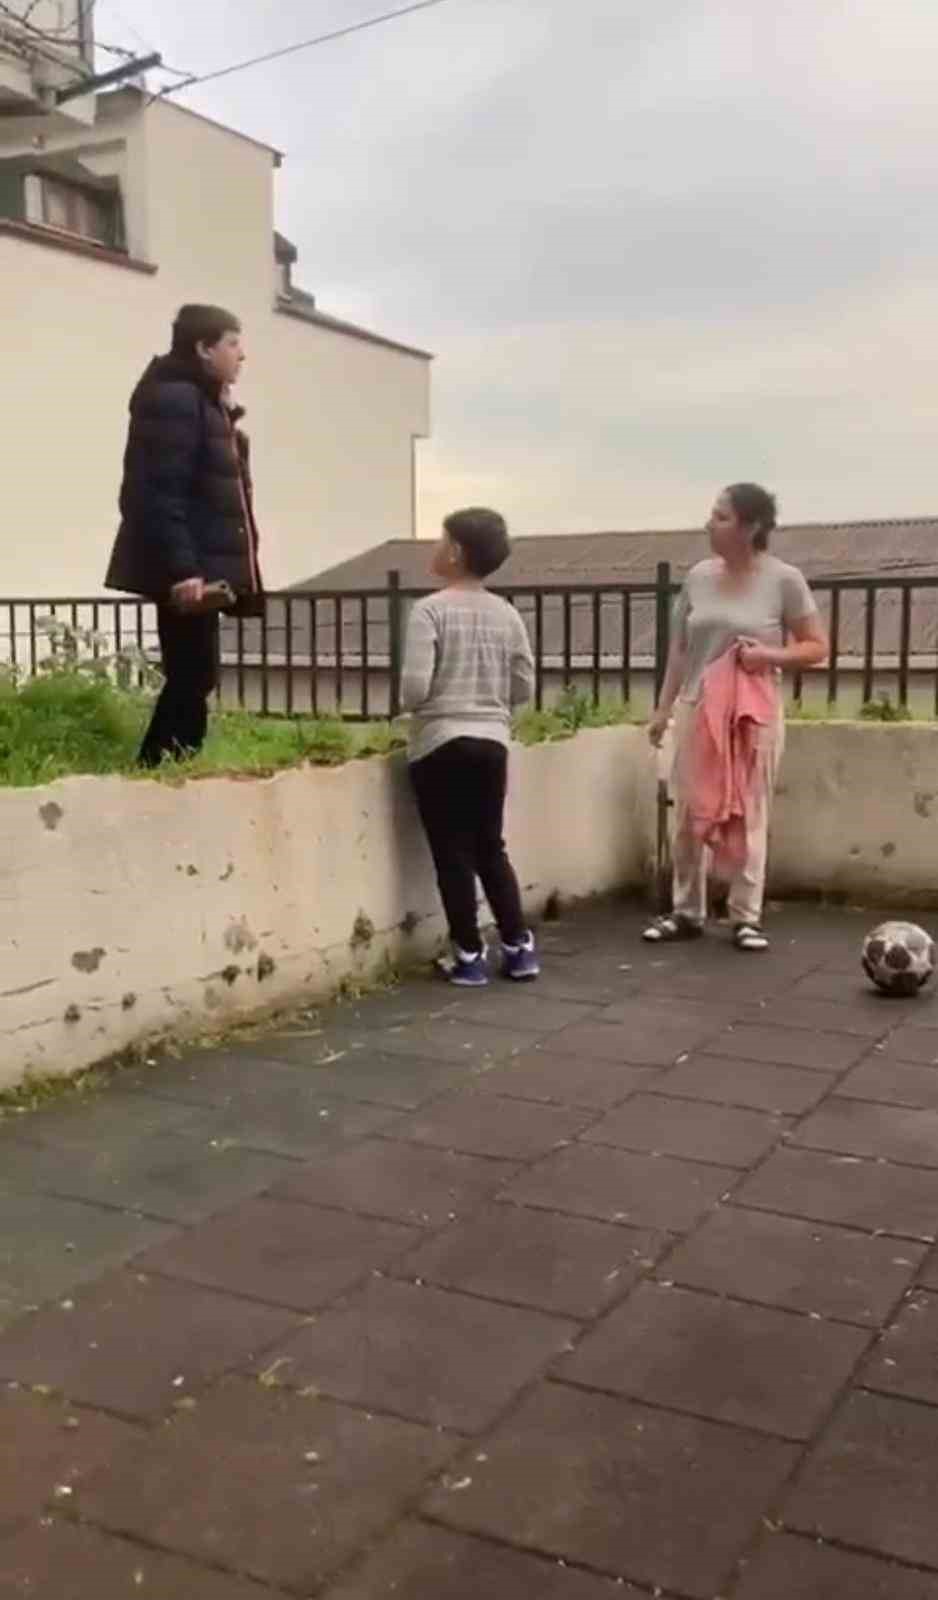 İstanbul’da parkta çocuğa şişle saldırı tehdidi kamerada: “Senin beynini patlatırım”
